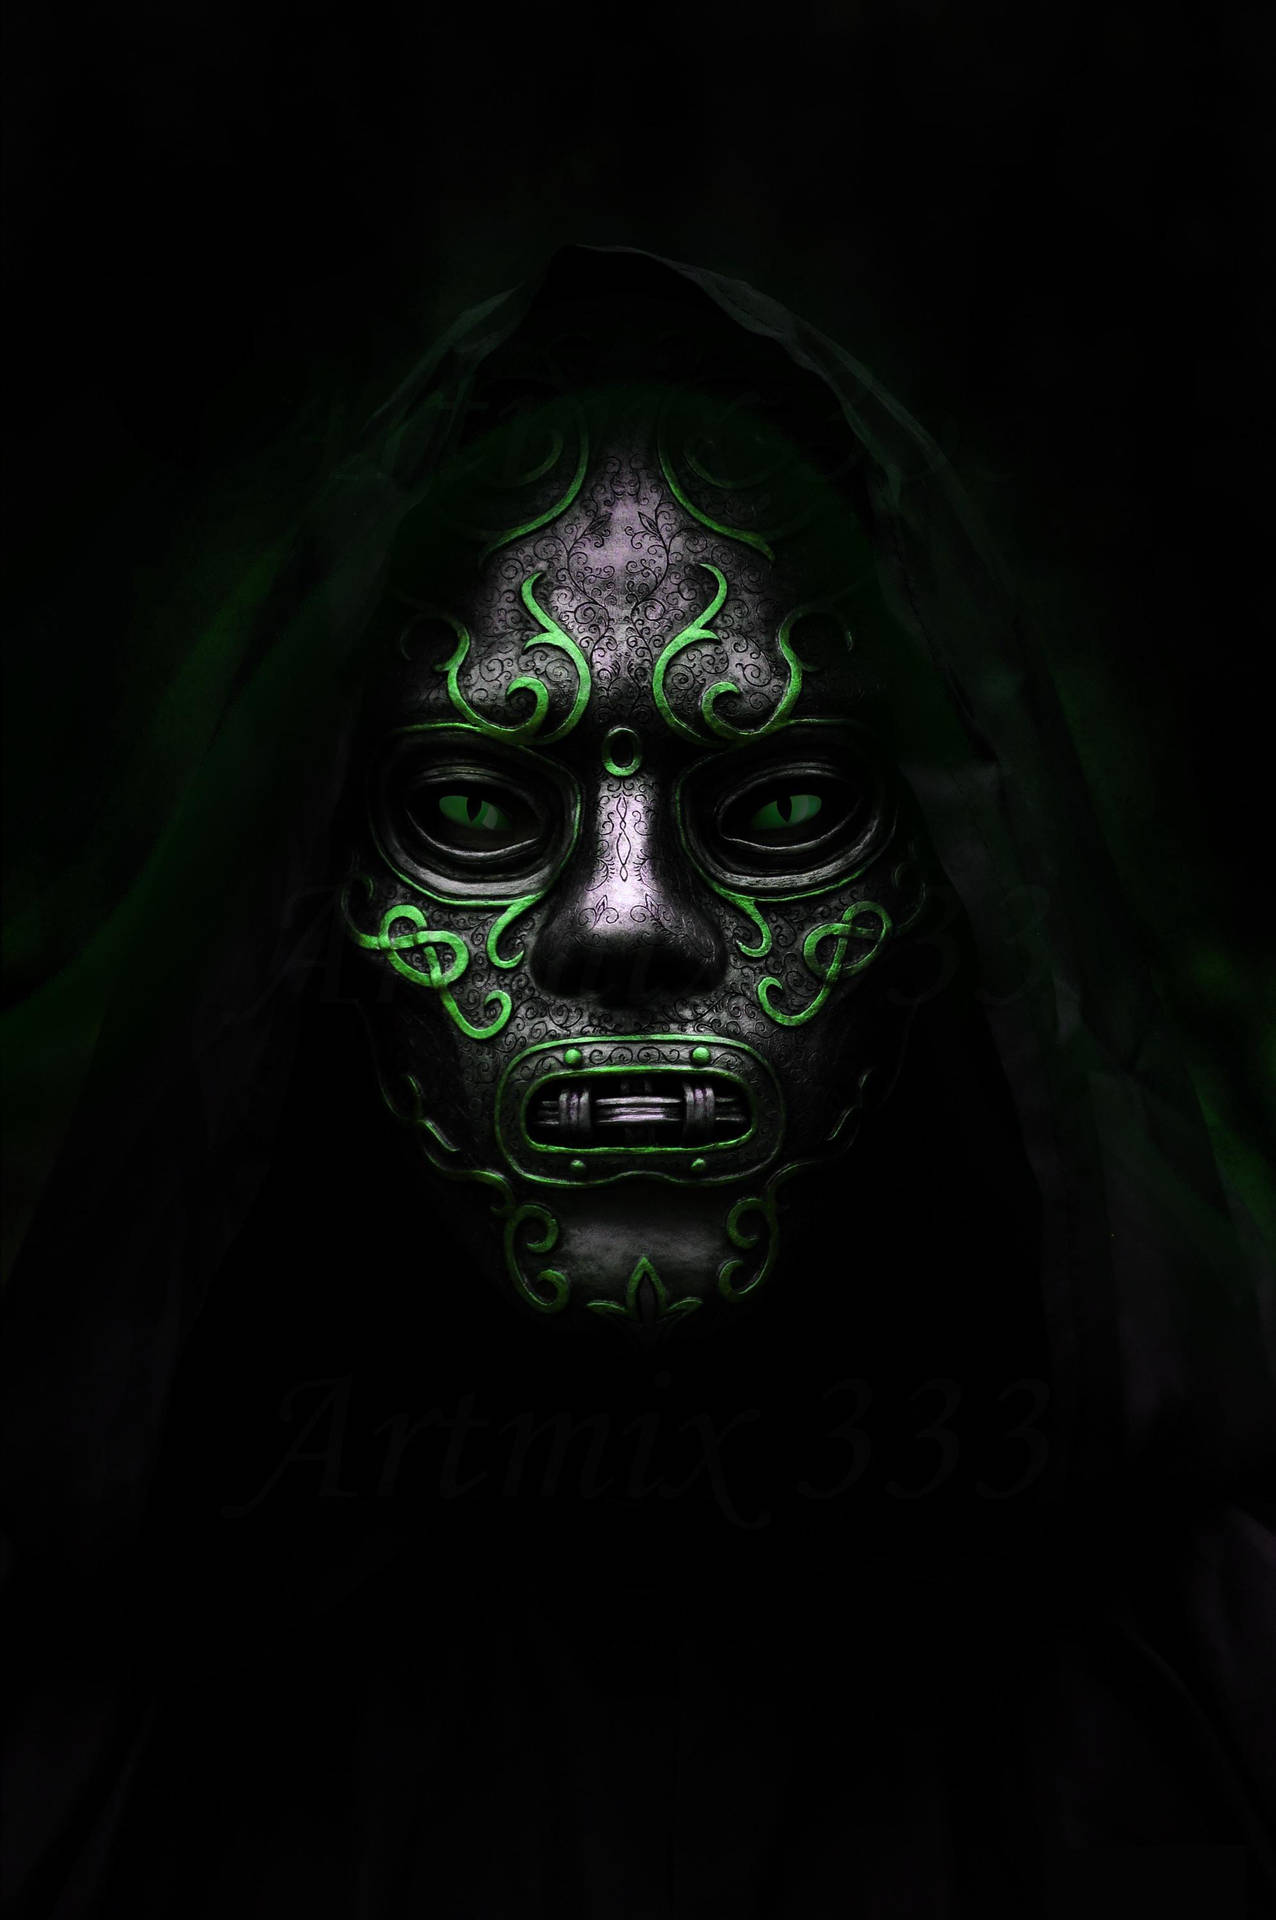 Doctor Doom-inspired Mask Background